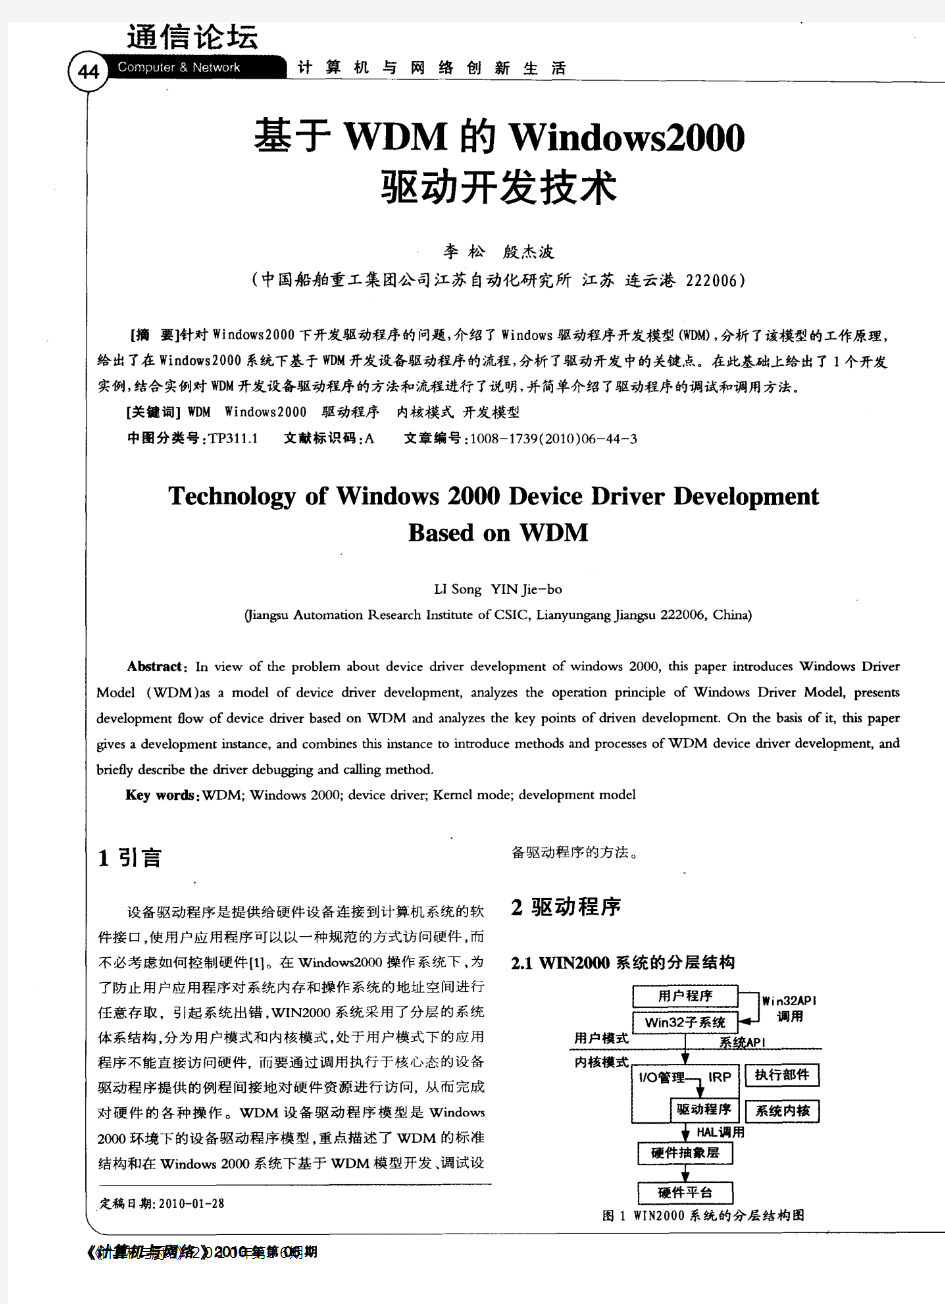 基于WDM的Windows2000驱动开发技术